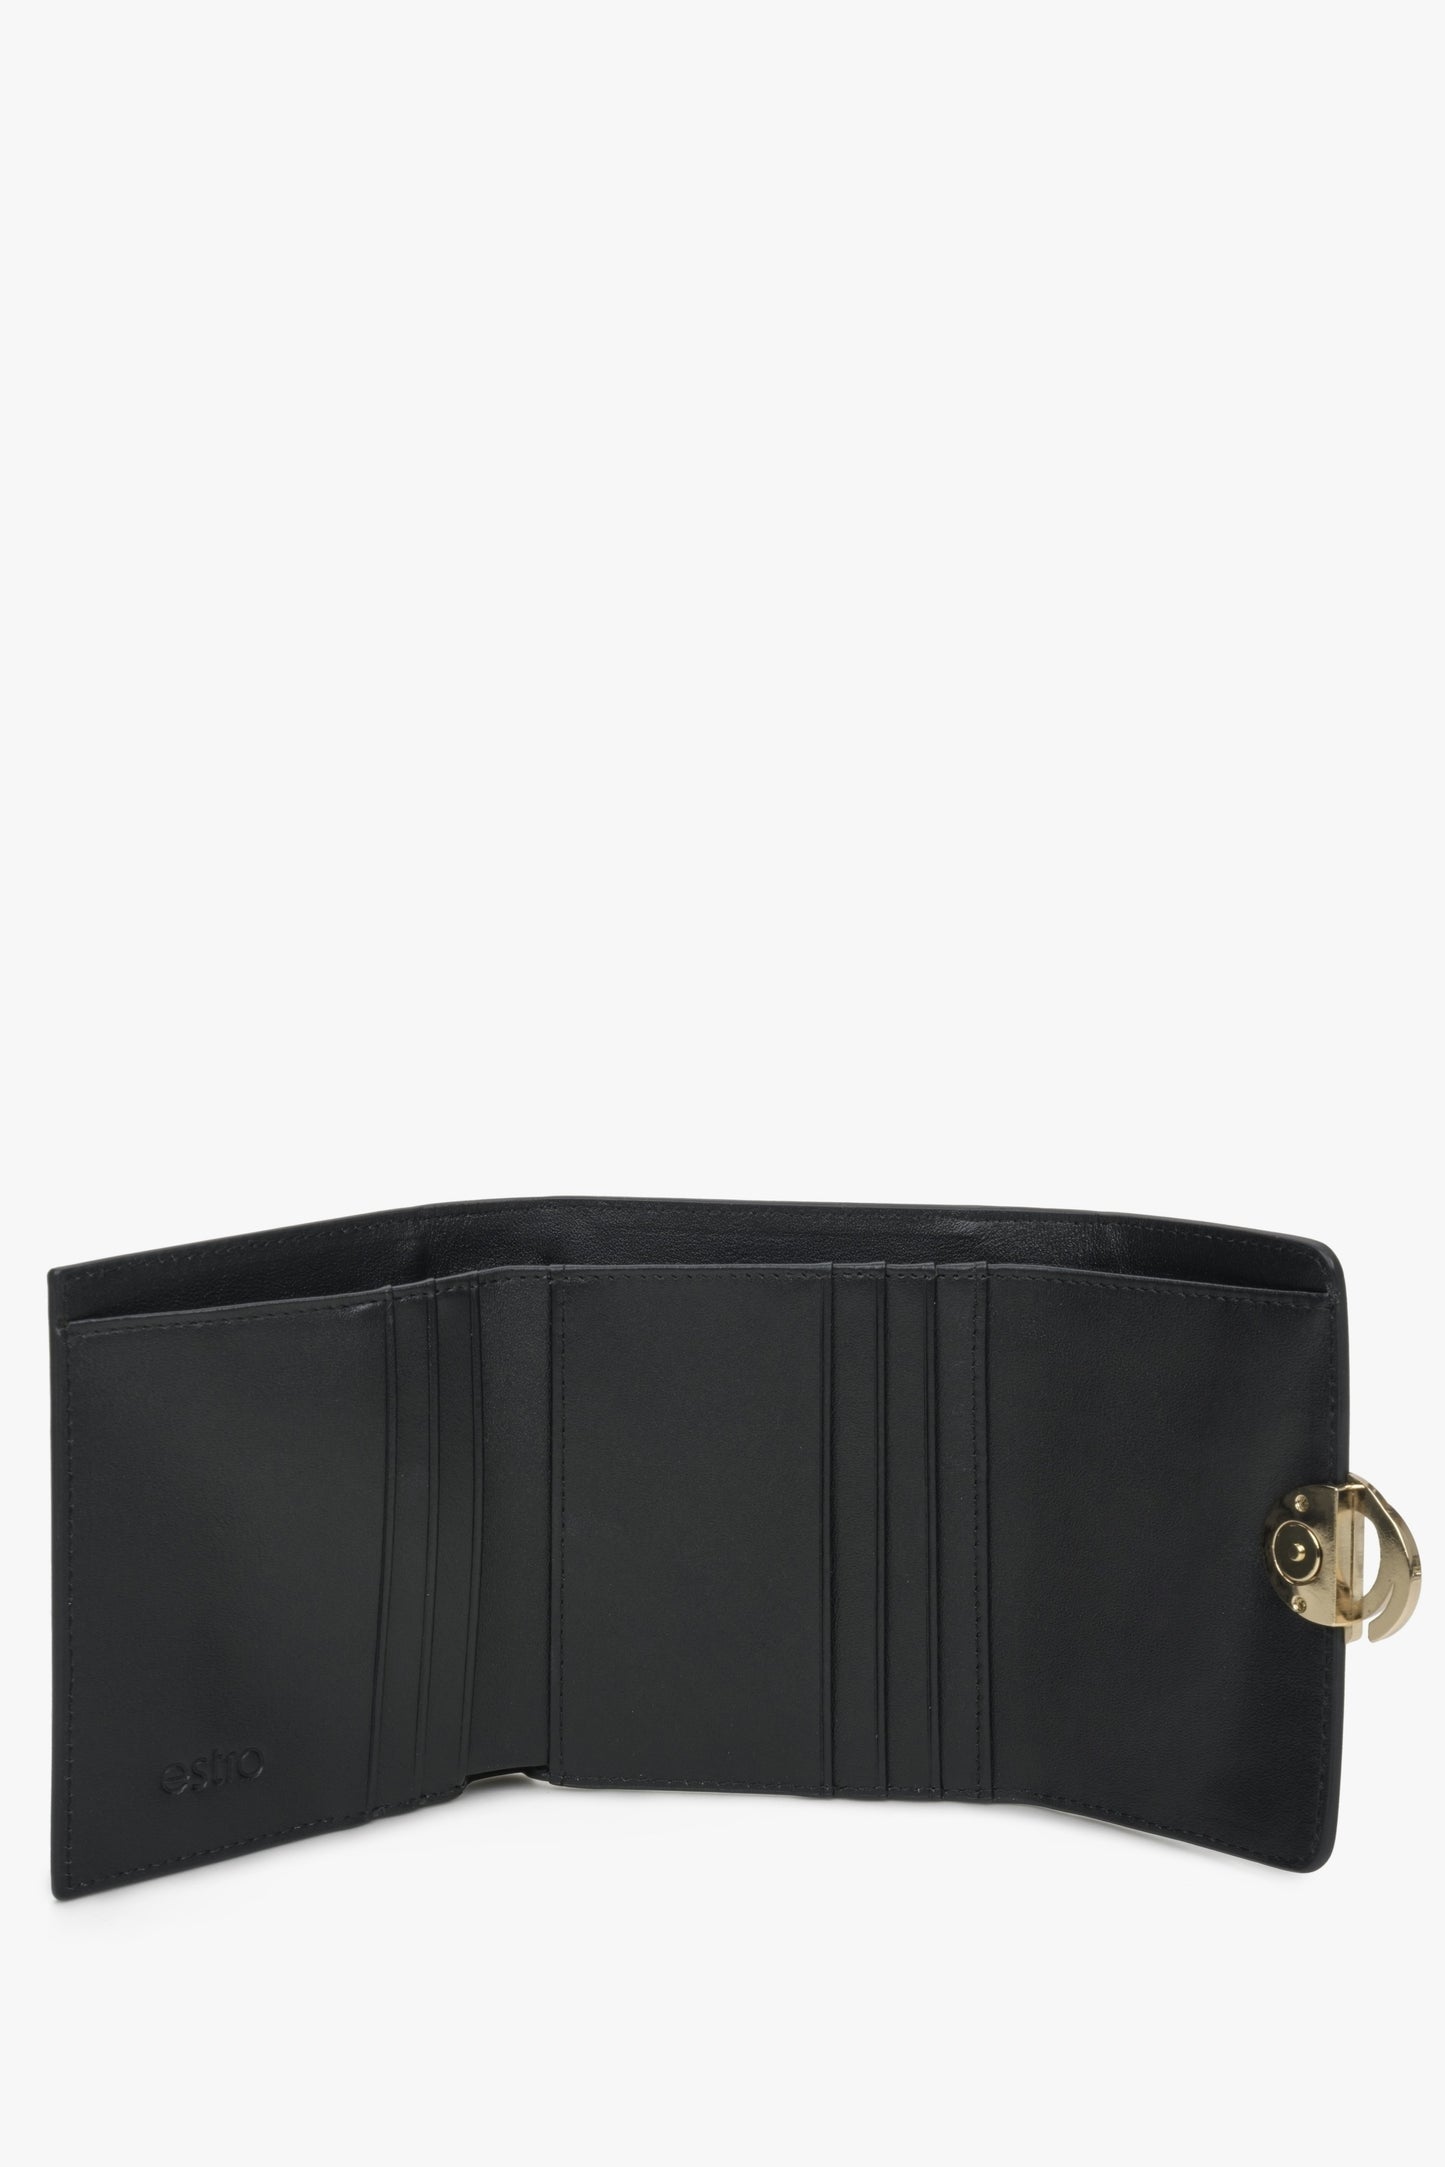 Mały skórzany portfel damski Estro w kolorze czarny - wnętrze.